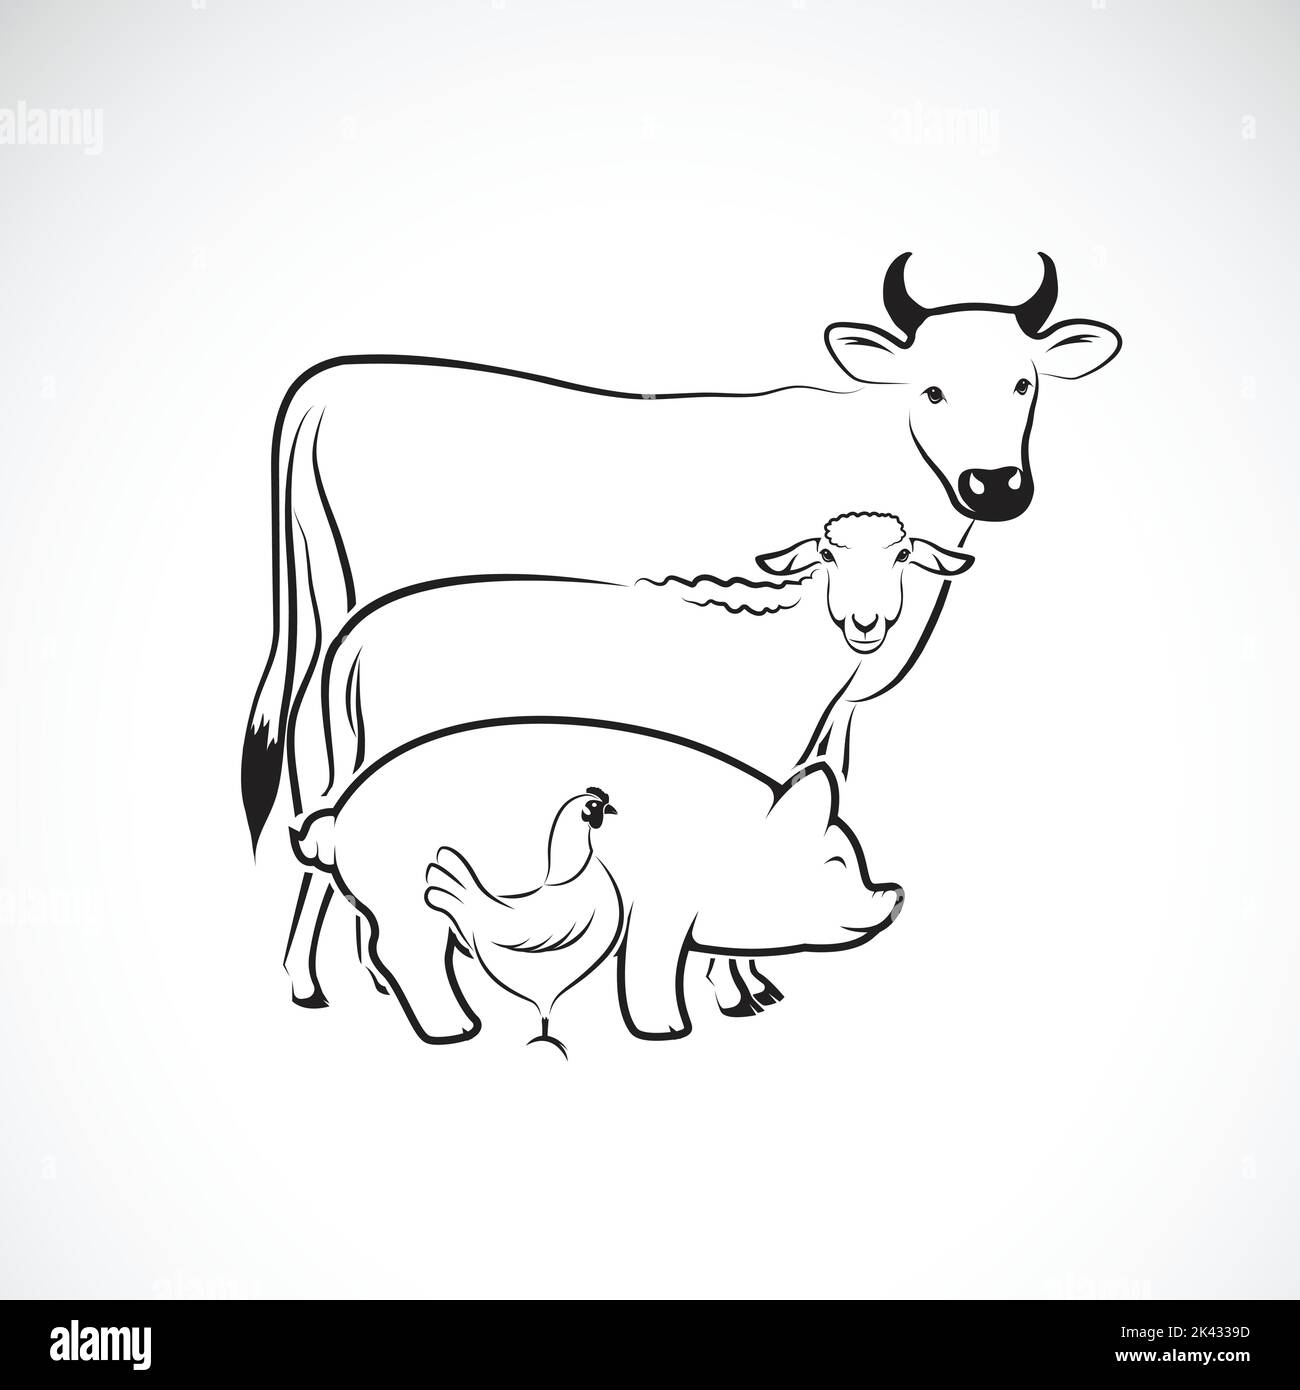 Vektor-Gruppe von Tierfarm-Design auf weißem Hintergrund., Kuh, Schaf, Schwein, Huhn. Logo Tier. Leicht editierbare Vektorgrafik mit Ebenen. Tier. Stock Vektor